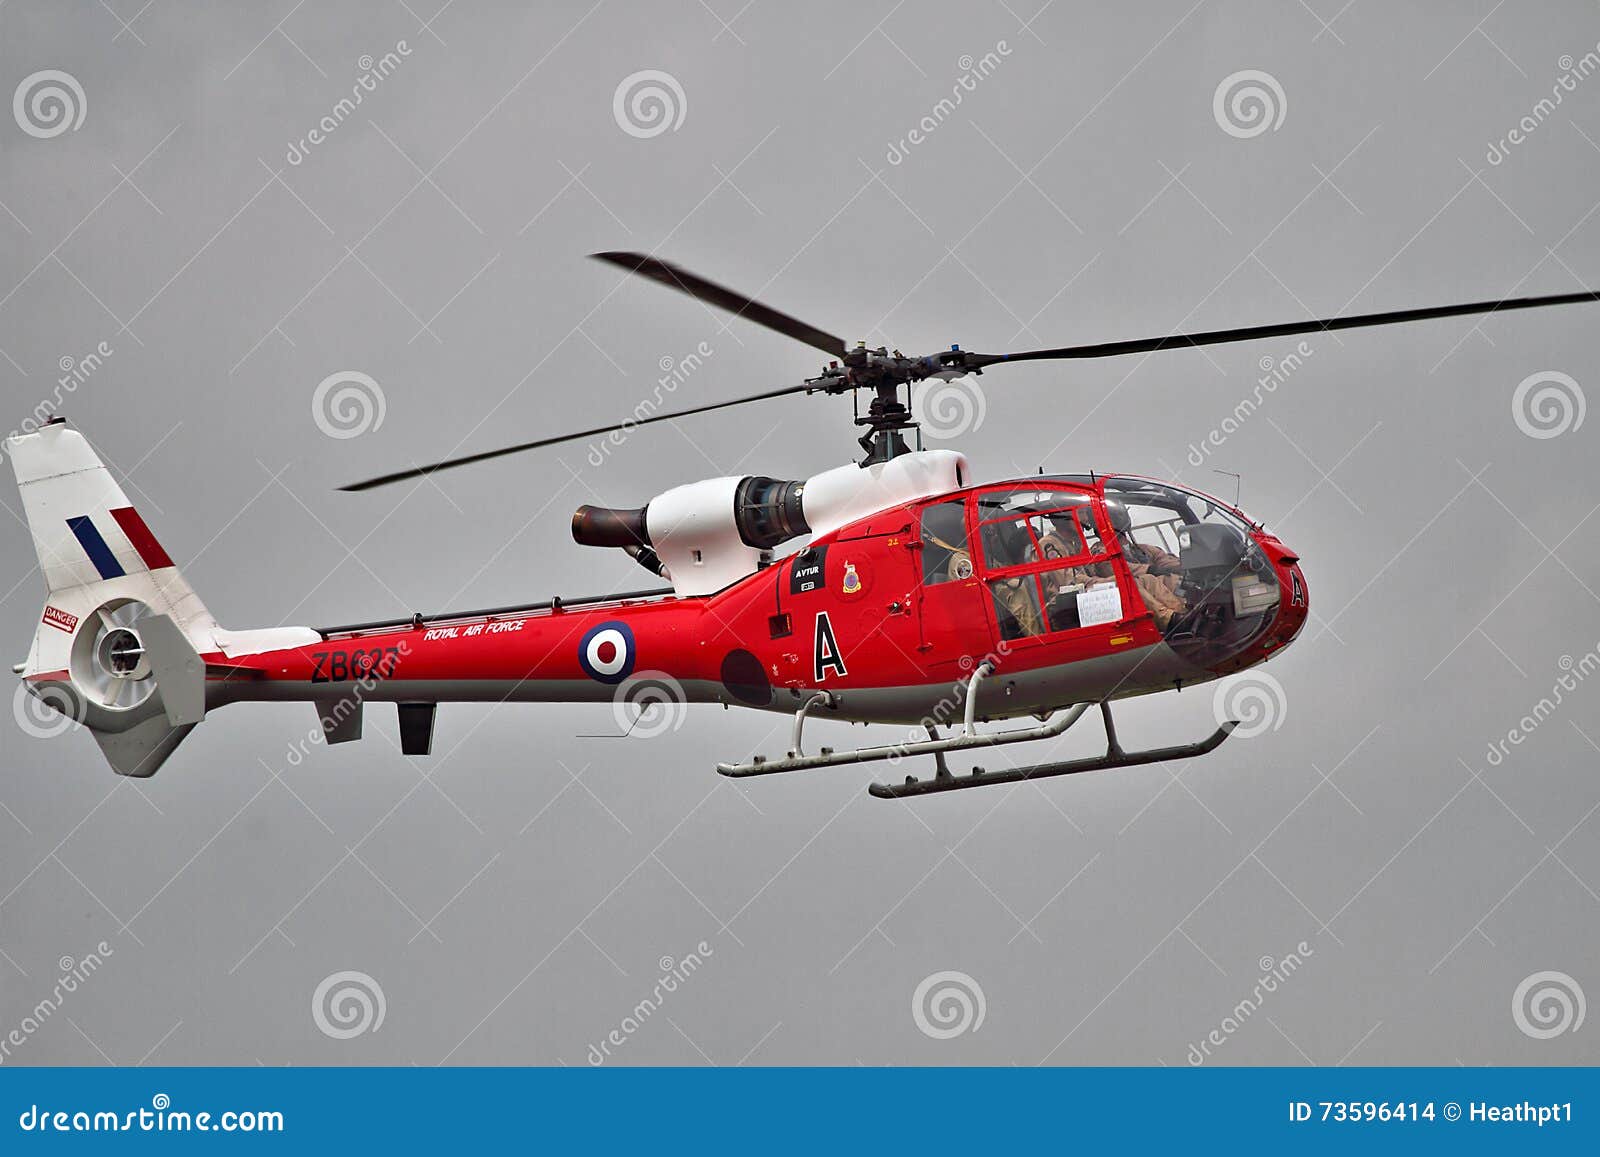 WESTLAND SUD AVIATION GAZELLE HELICOPTER LARGE VINTAGE PHOTO 